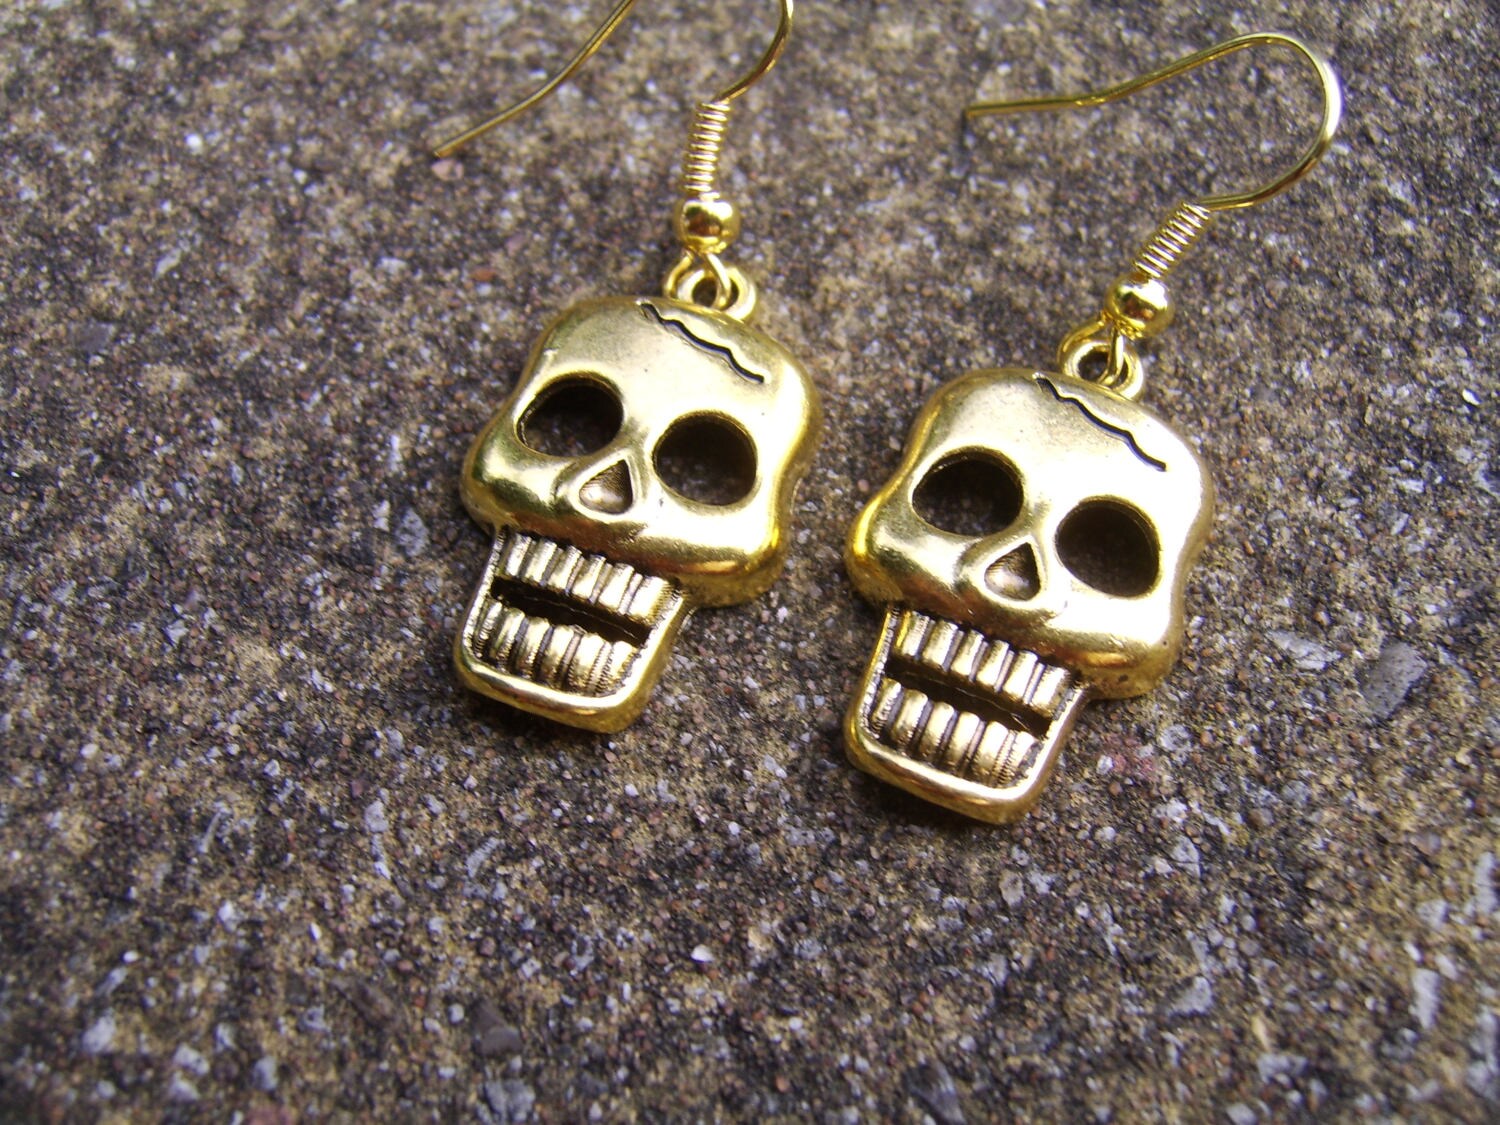 Tibetan Gold Skull Earrings. Antique Gold Tone Skull Earrings. - Etsy UK